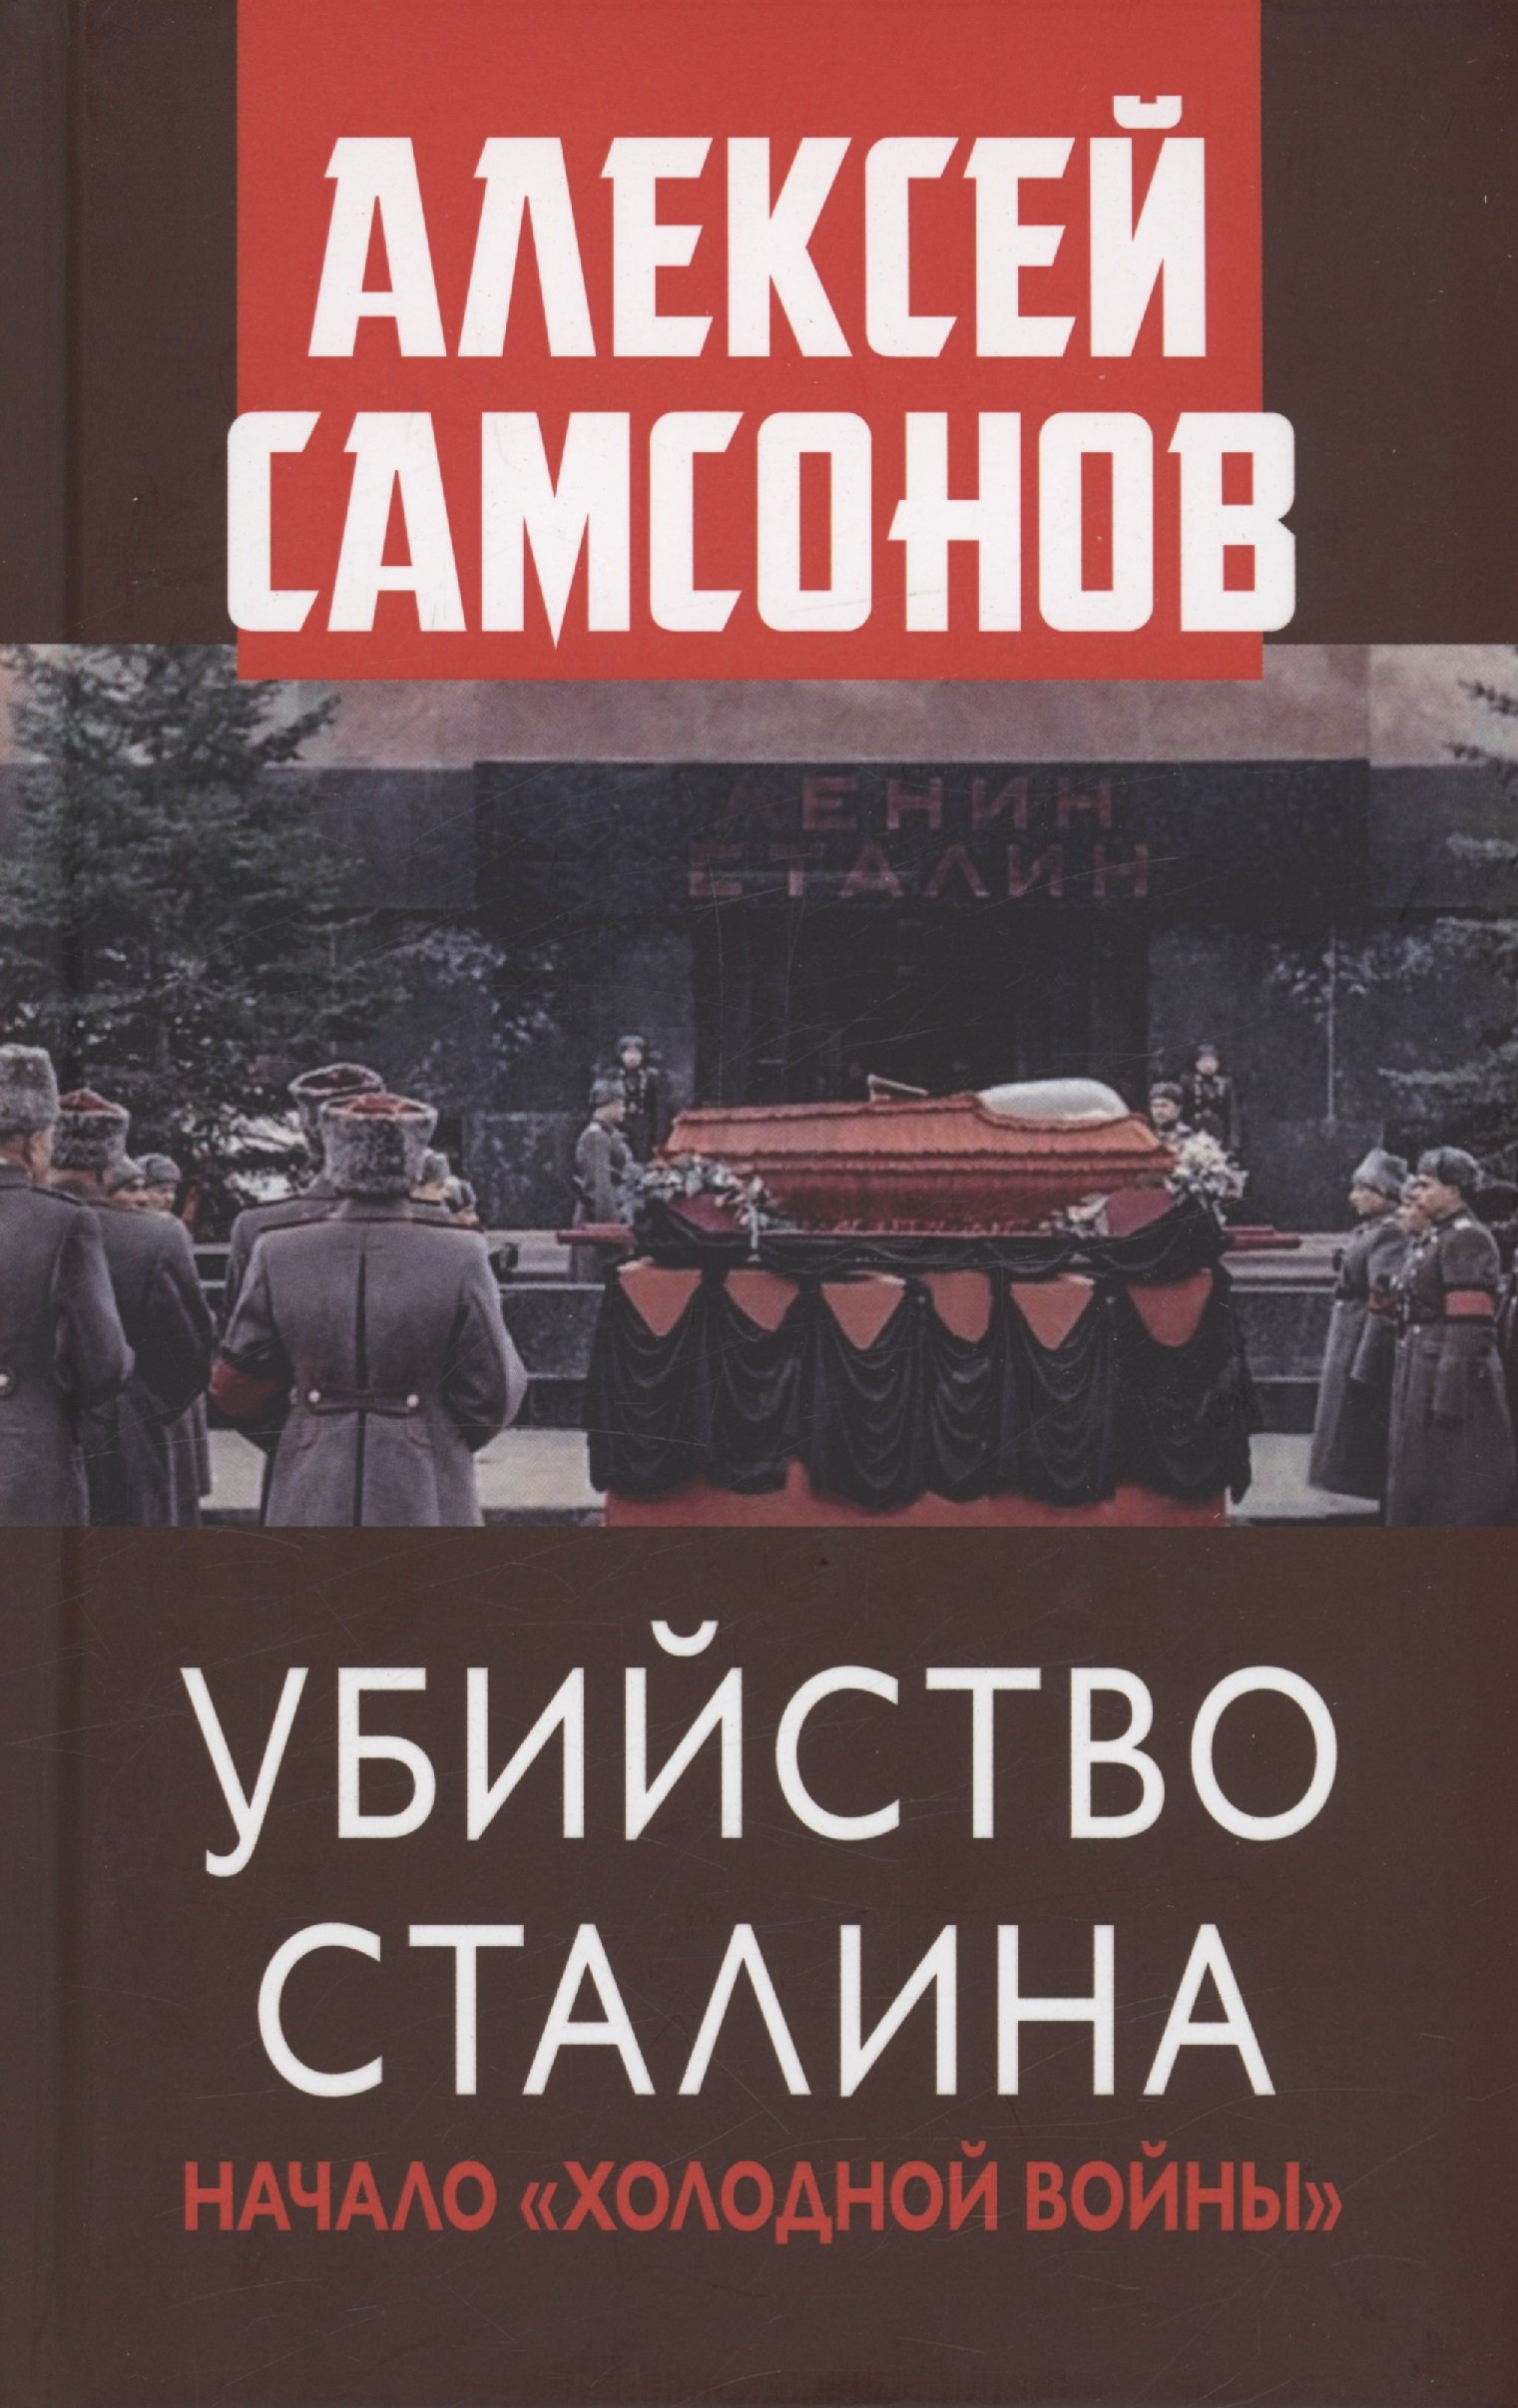 Самсонов А.В. - Убийство Сталина. Начало "Холодной войны"